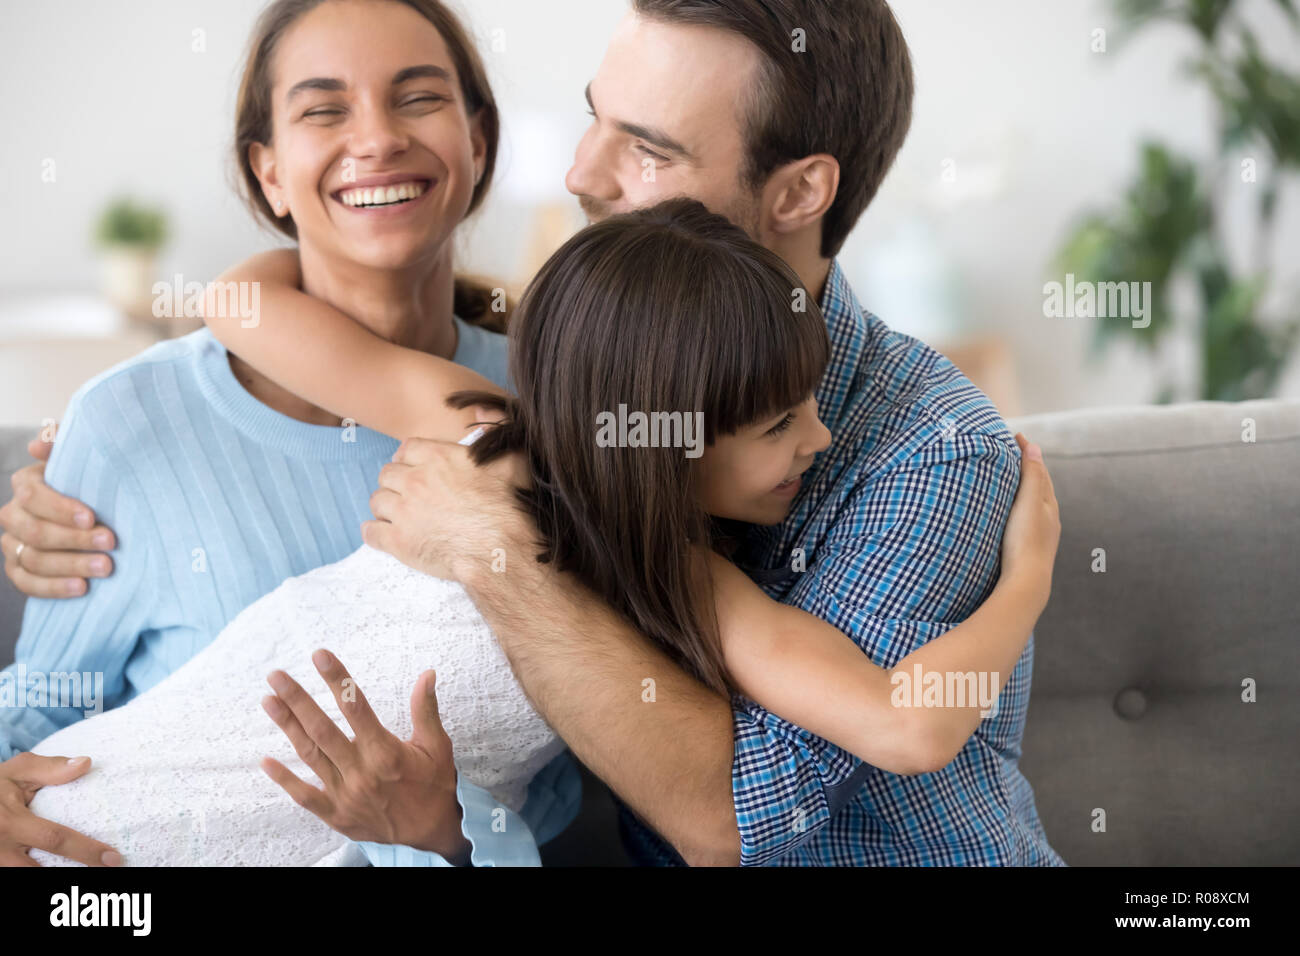 Adorable fille préscolaire embrassant happy smiling parents Banque D'Images